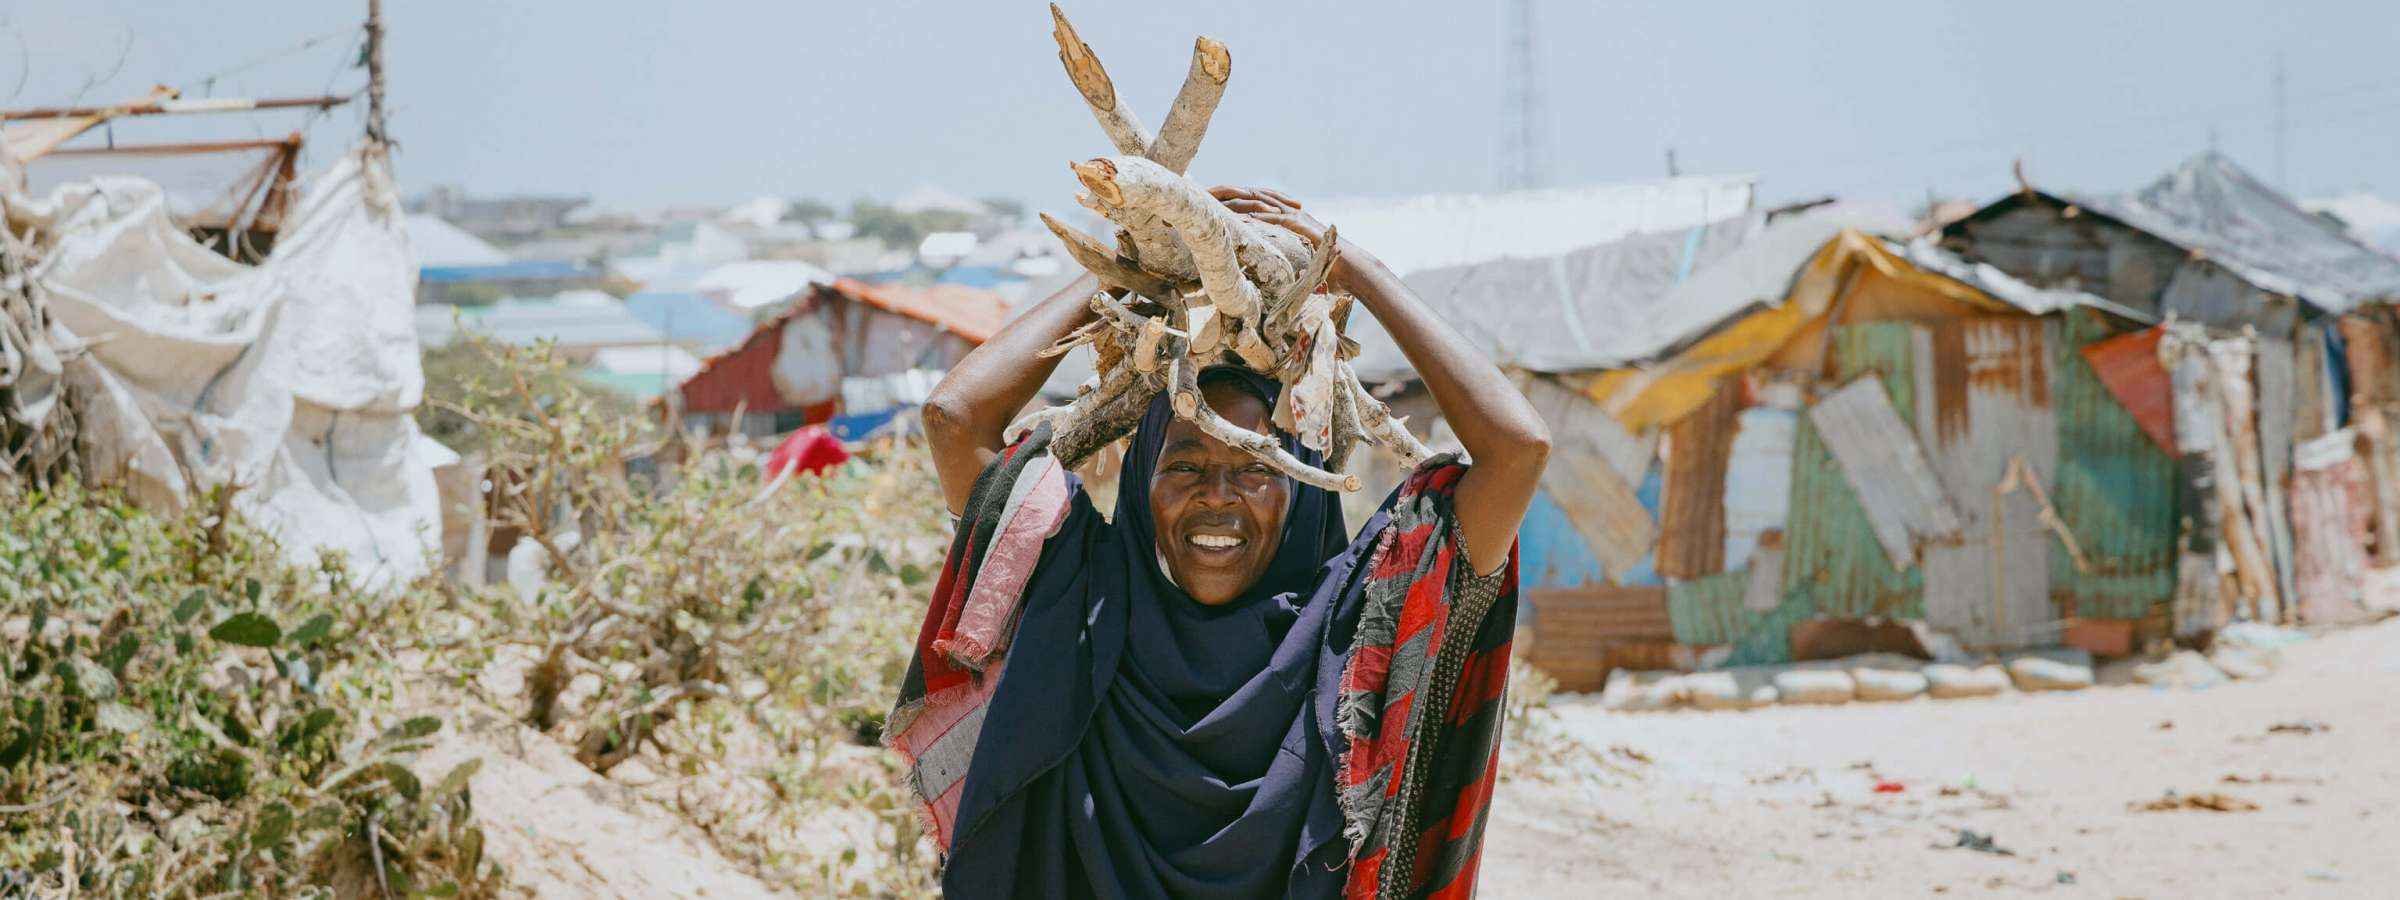 Galbeed, Somalia – The Badbaado II IDP site 